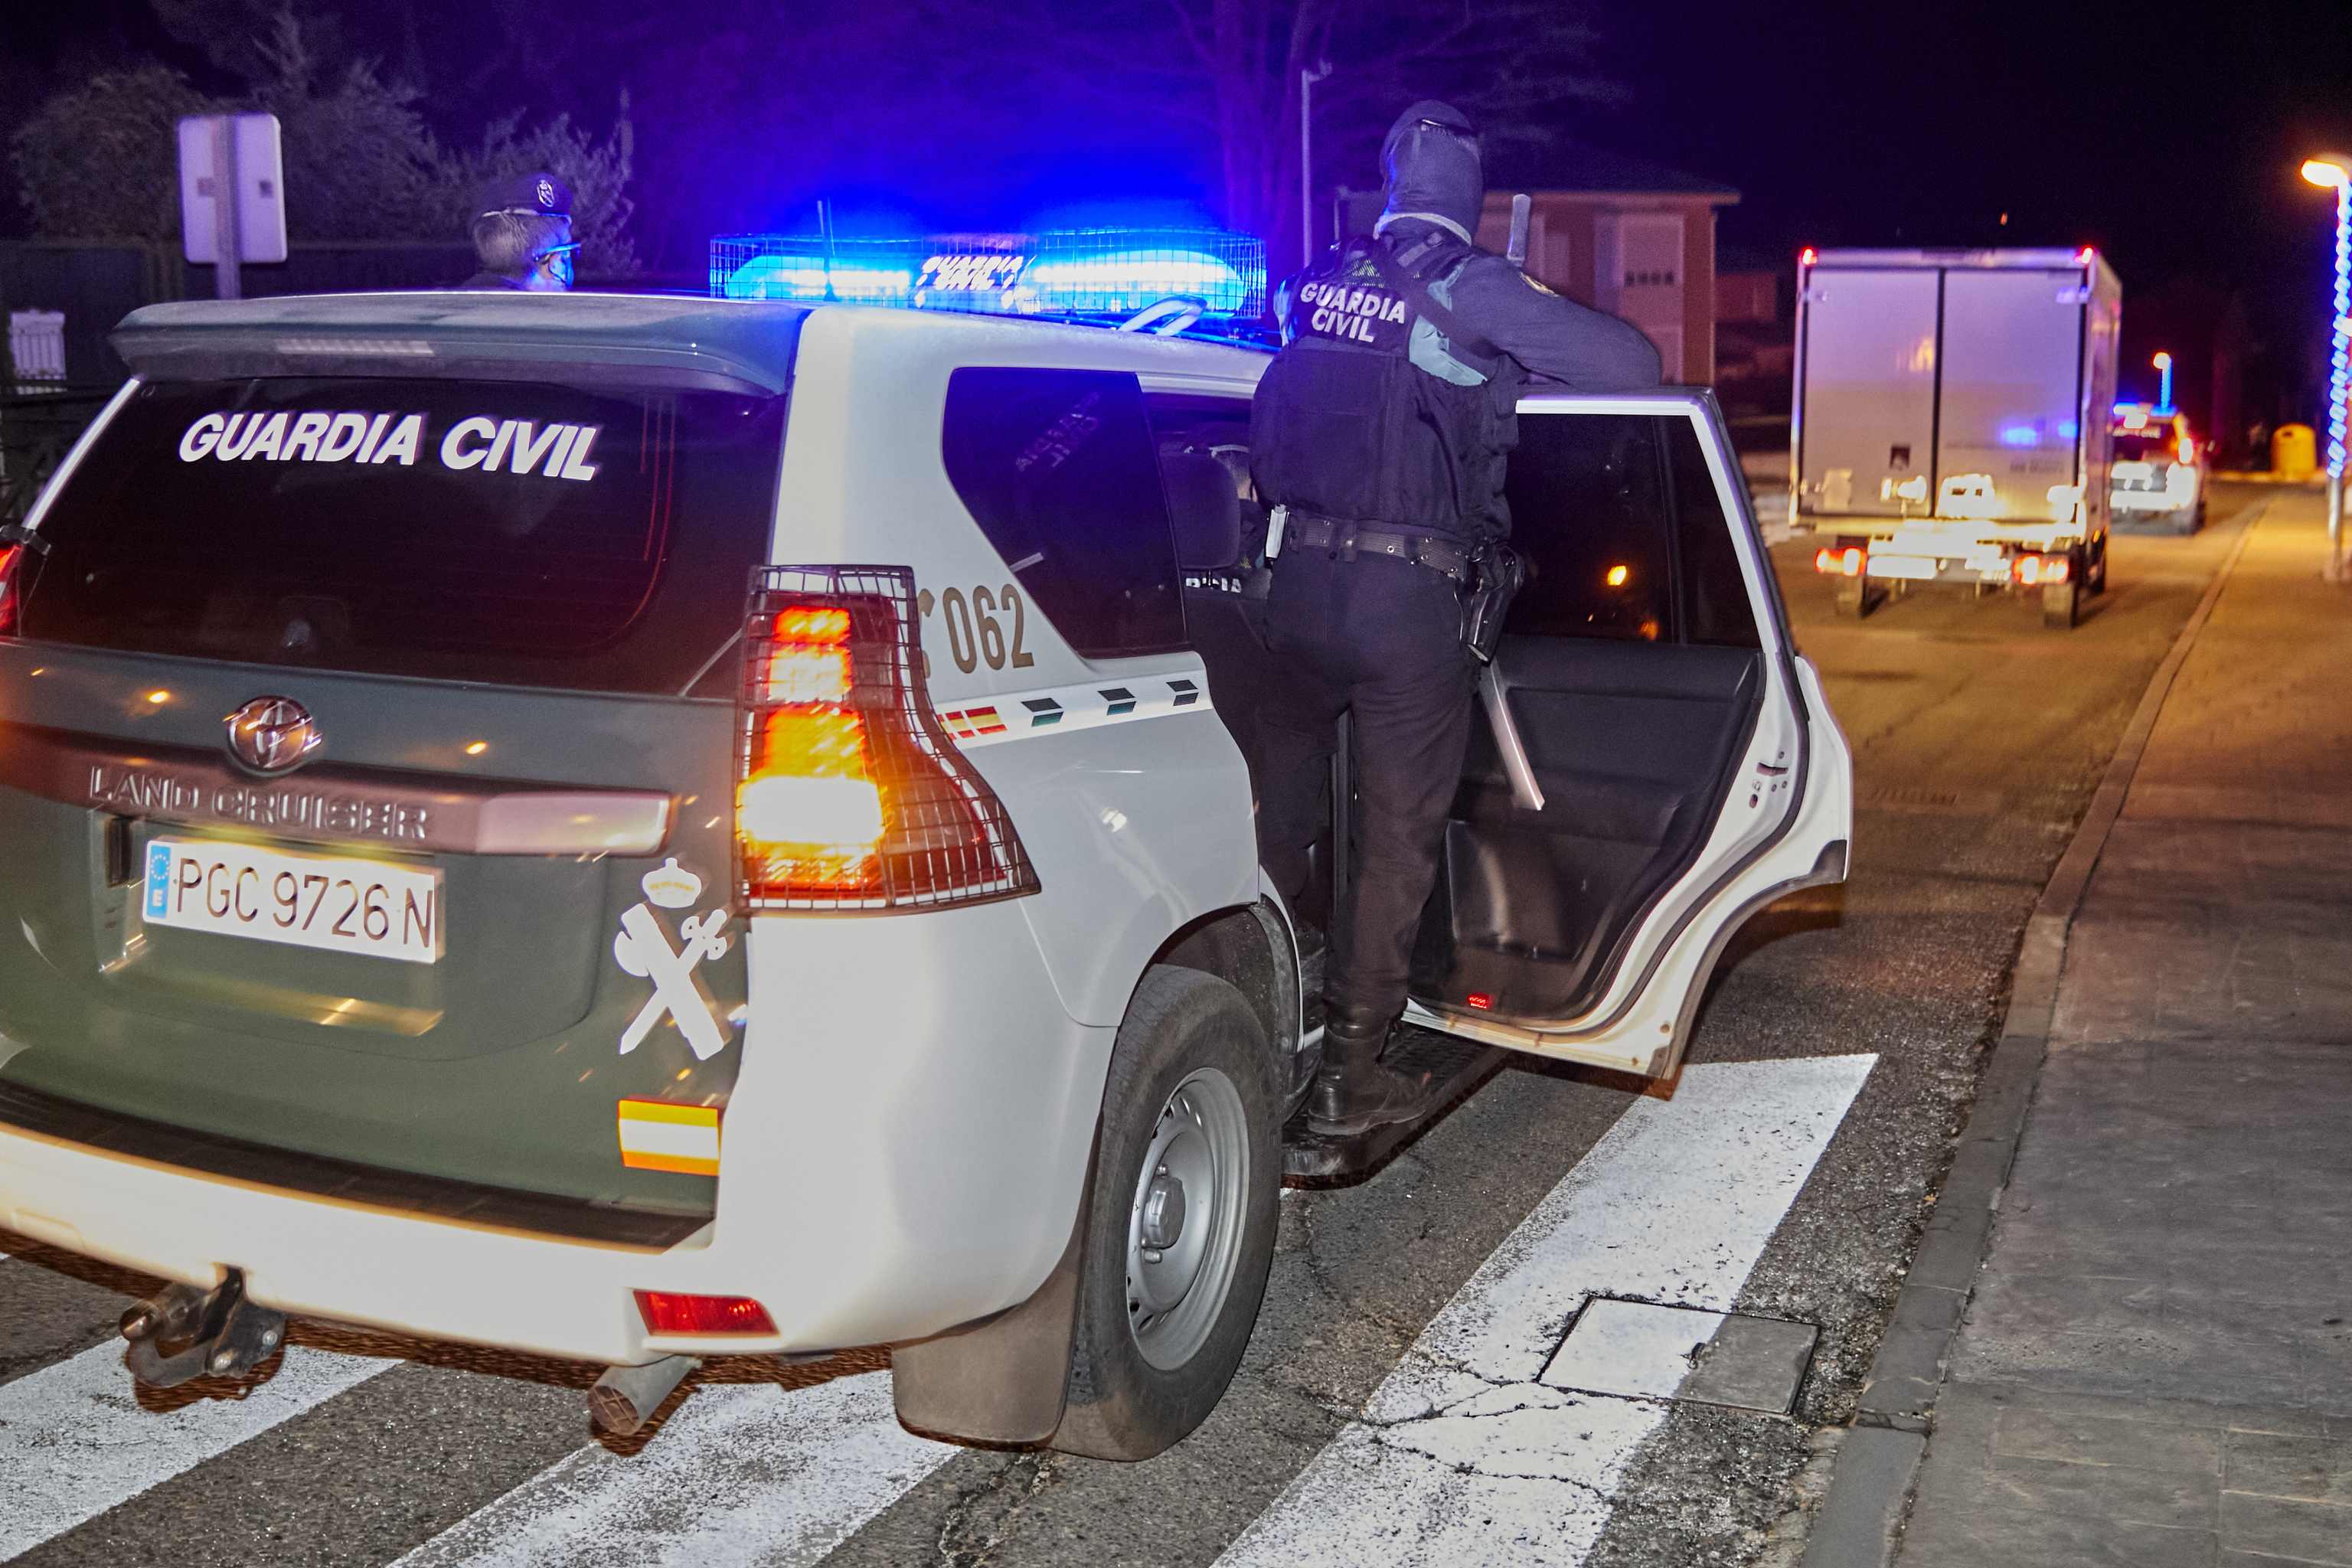 Coche patrulla de la Guardia Civil, en Burgos.